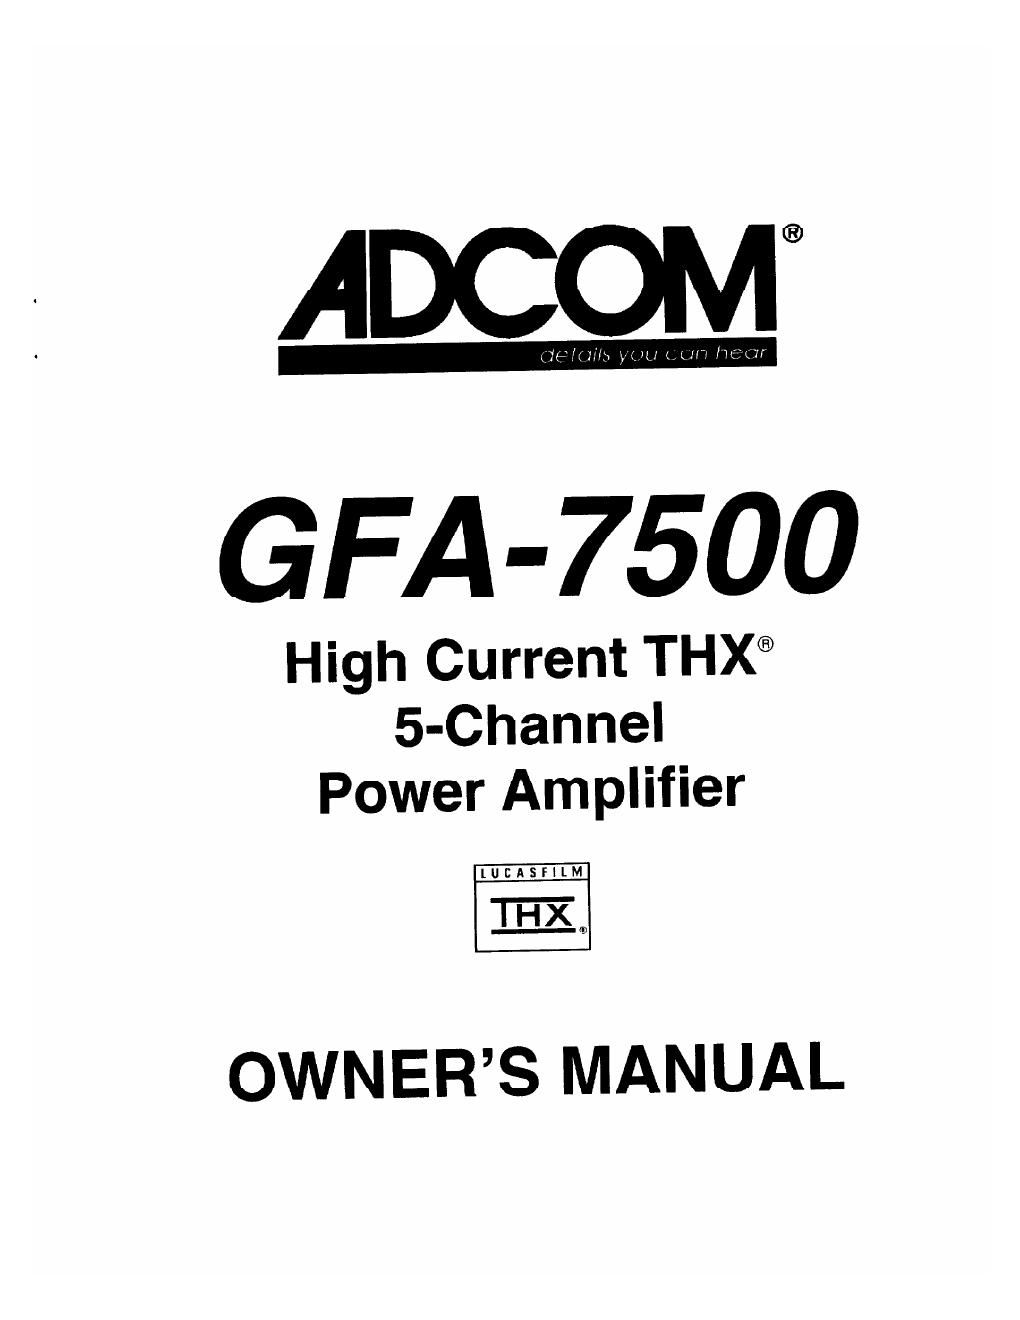 adcom gfa 7500 owners manual